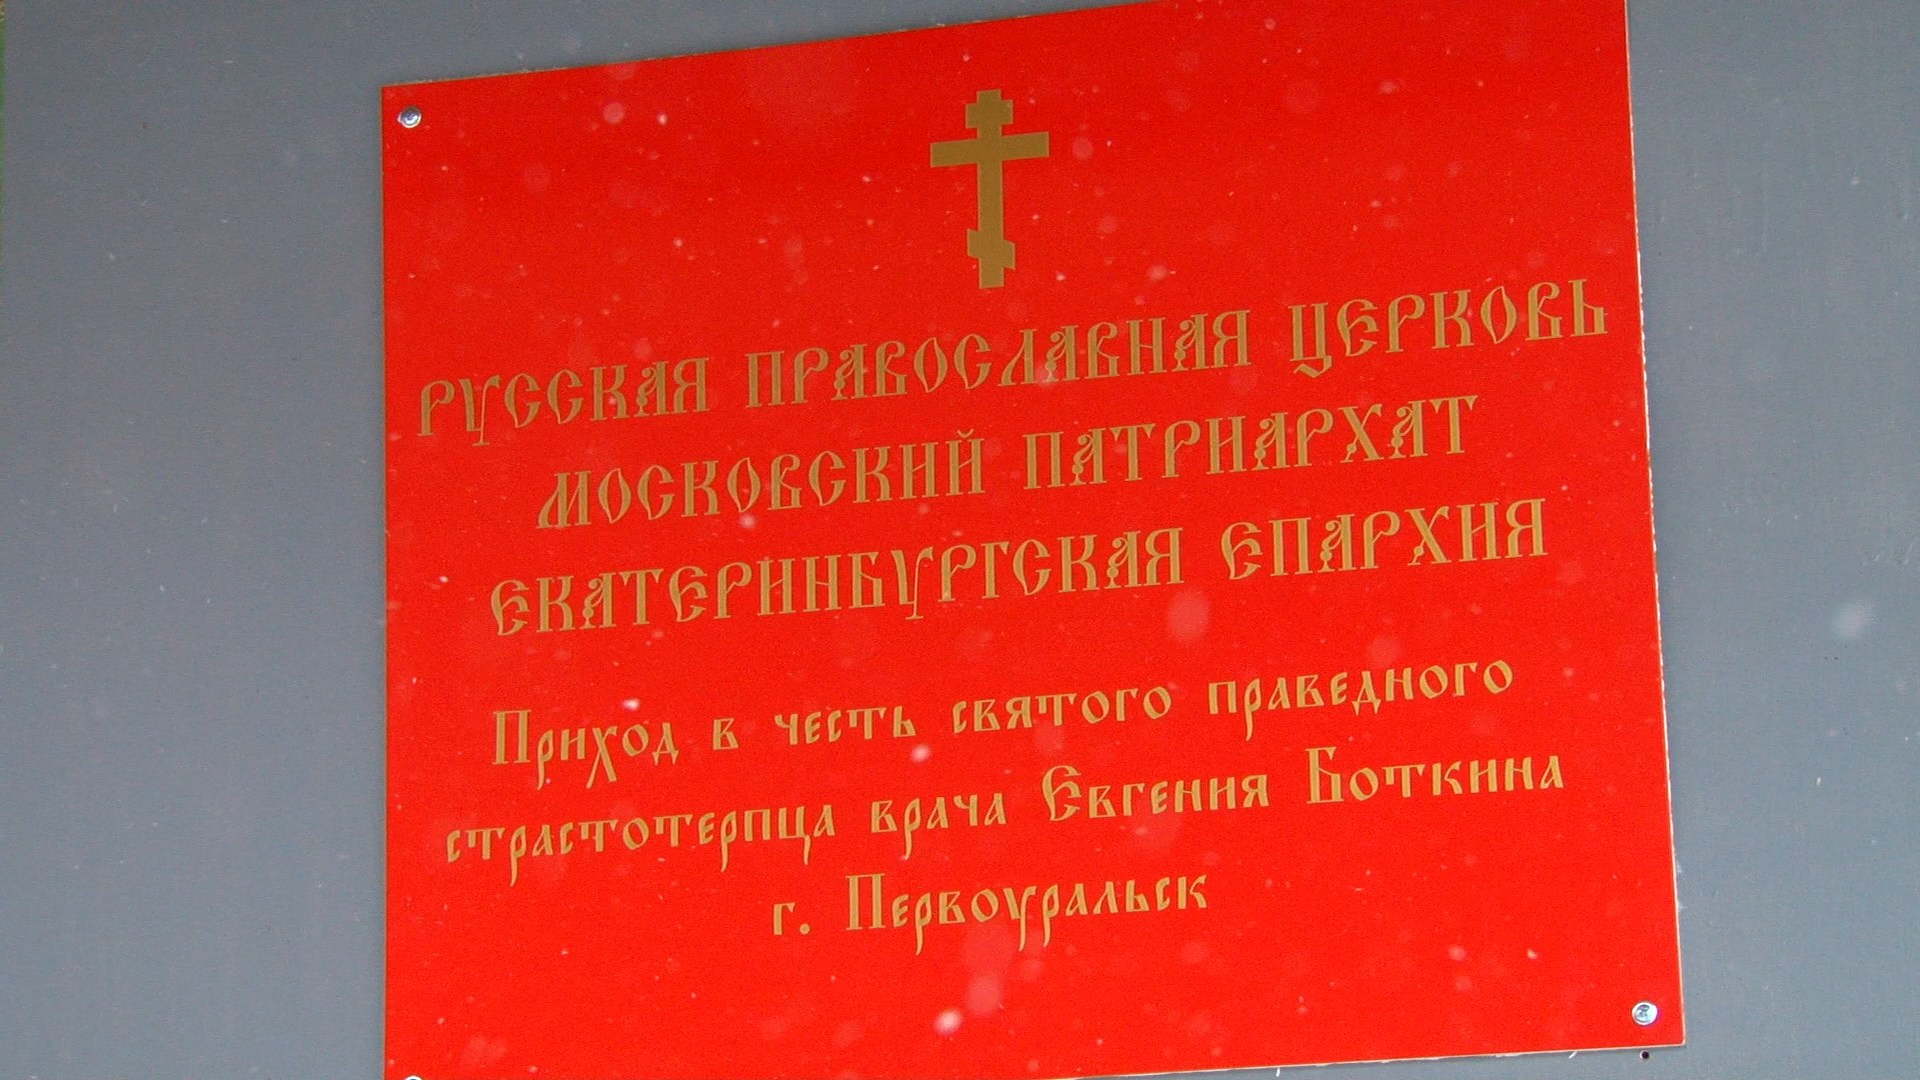 Открылась молельная комната прихода во имя Евгения Боткина